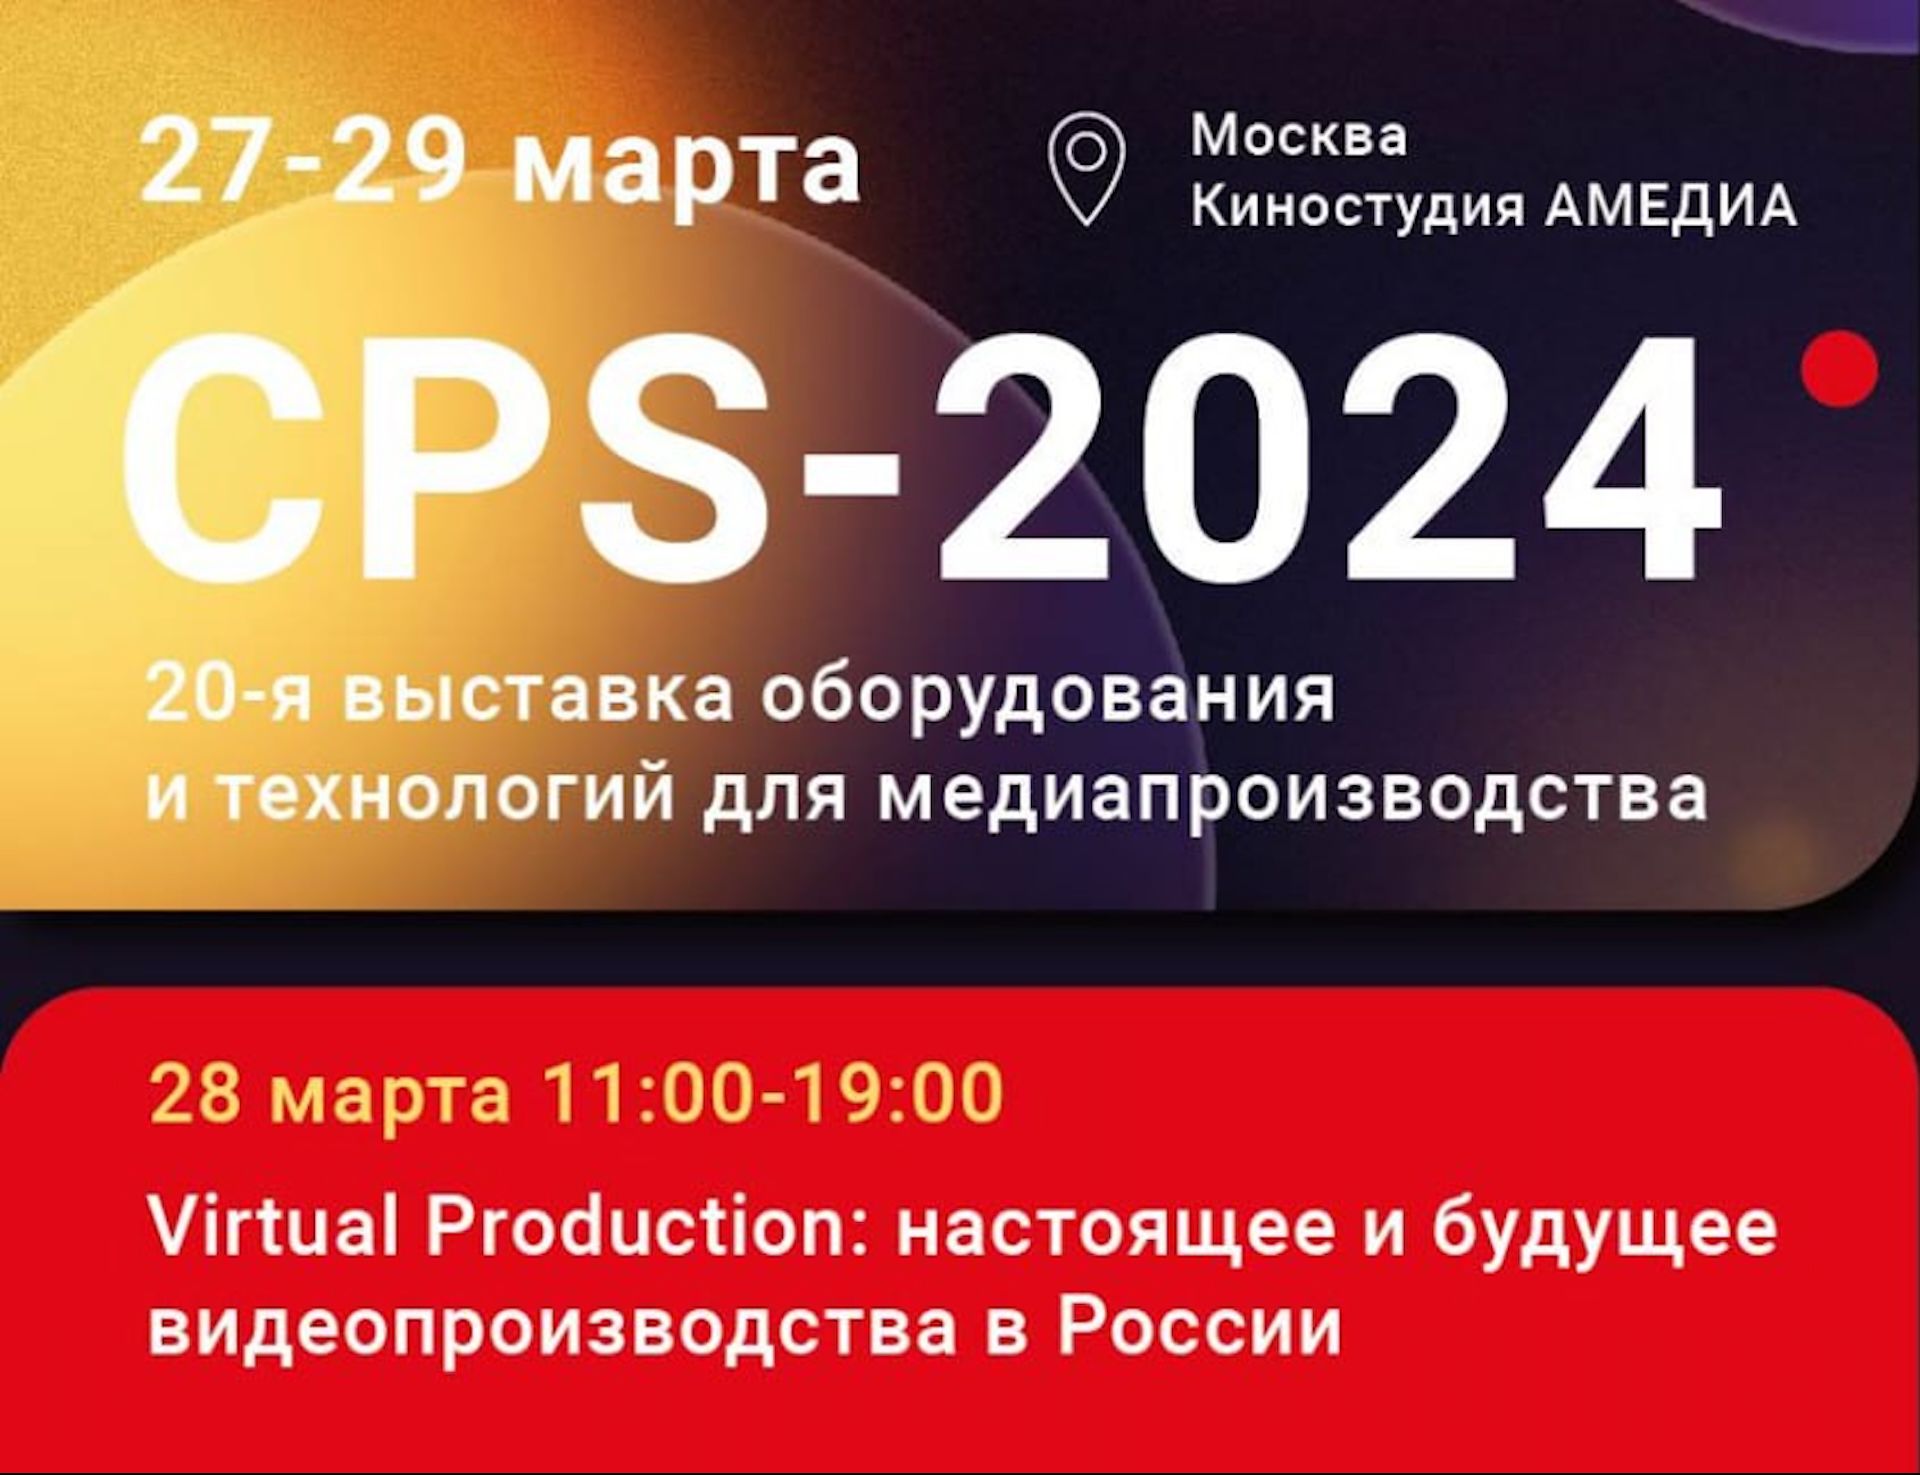 В Москве откроется выставка оборудования и технологий для медиапроизводства <i>CPS-2024</i>